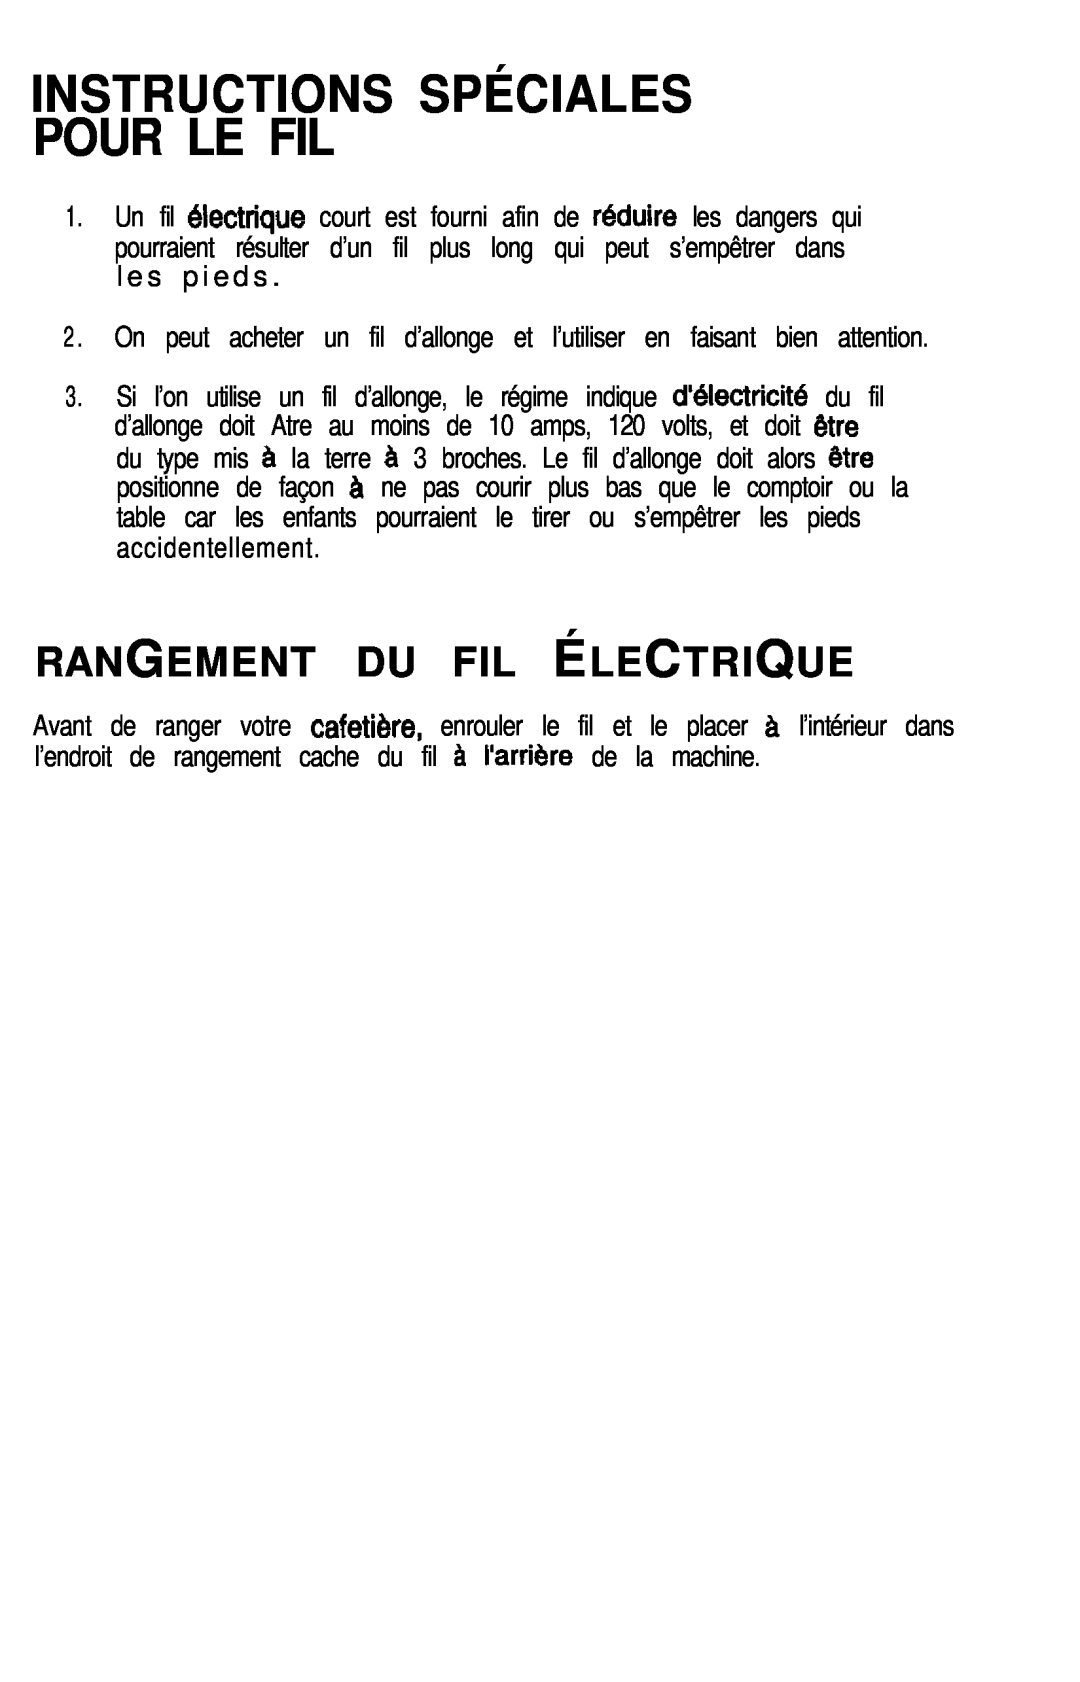 Mr. Coffee CK240 manual Instructions Spéciales Pour Le Fil, Rangement Du Fil Électrique 